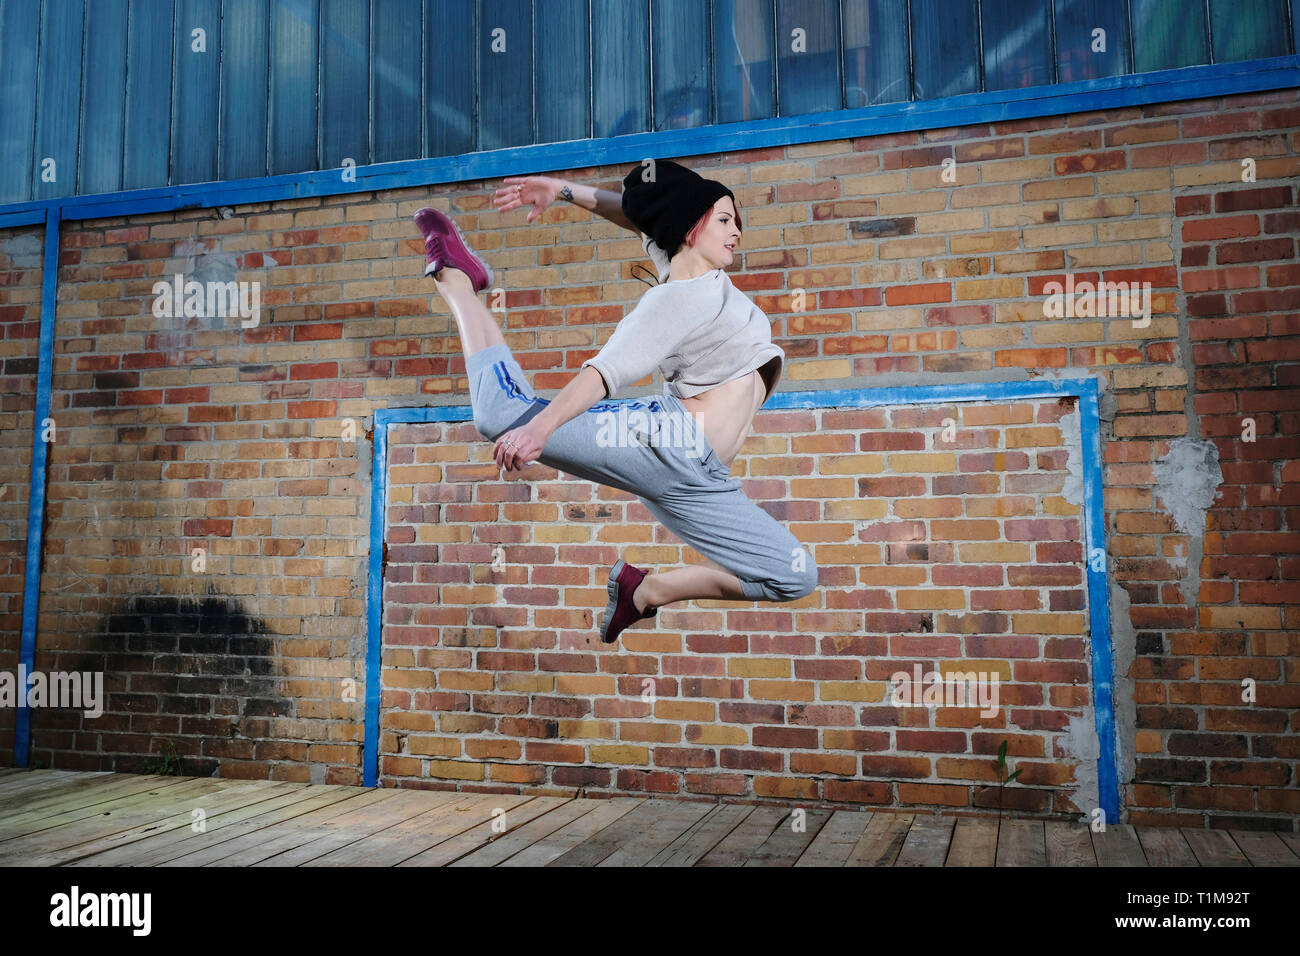 Femme danseuse moderne l'exécution contre brick wall Banque D'Images